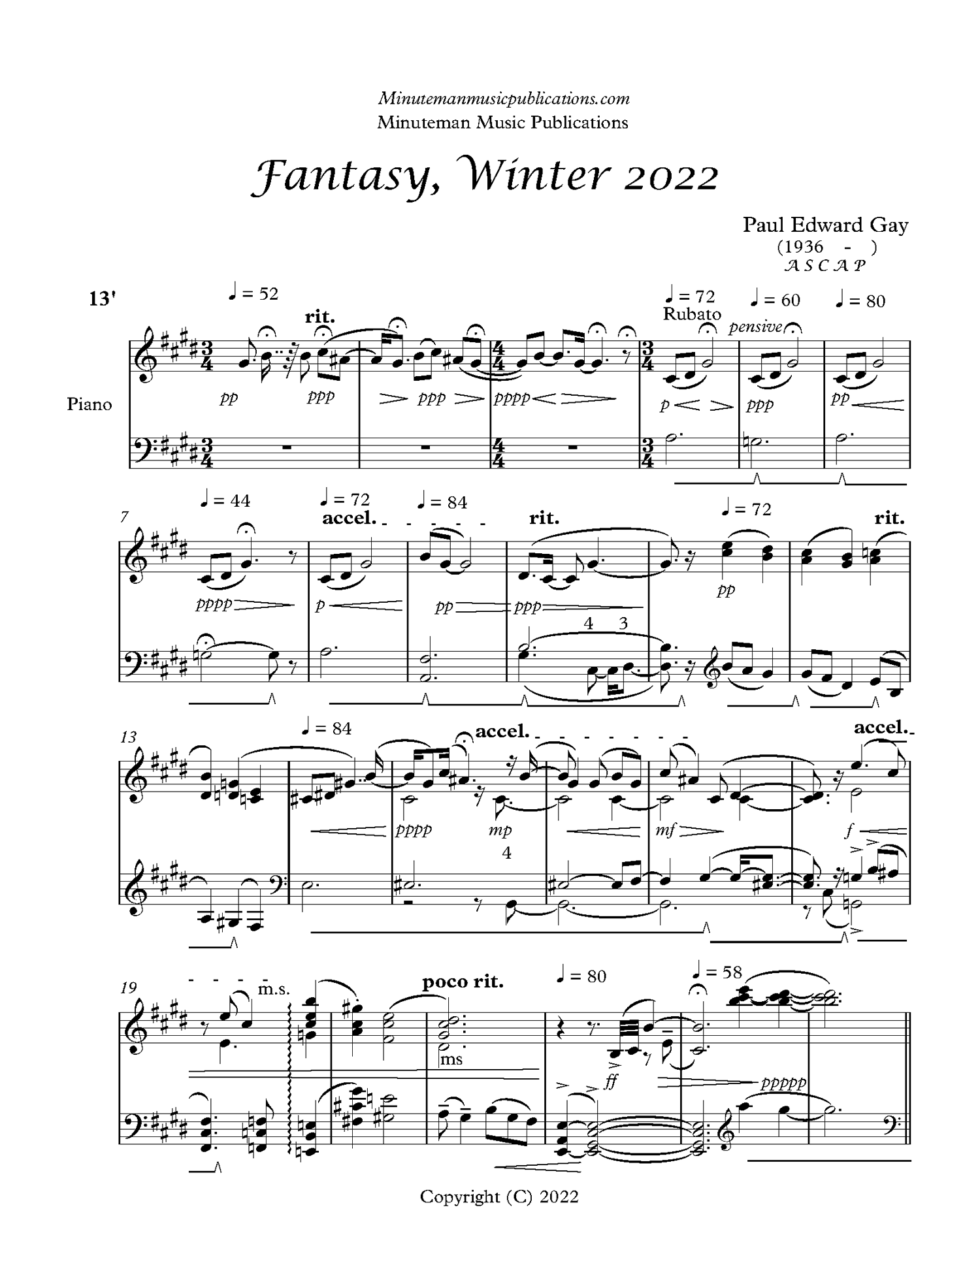 Fantasy, Winter 2022